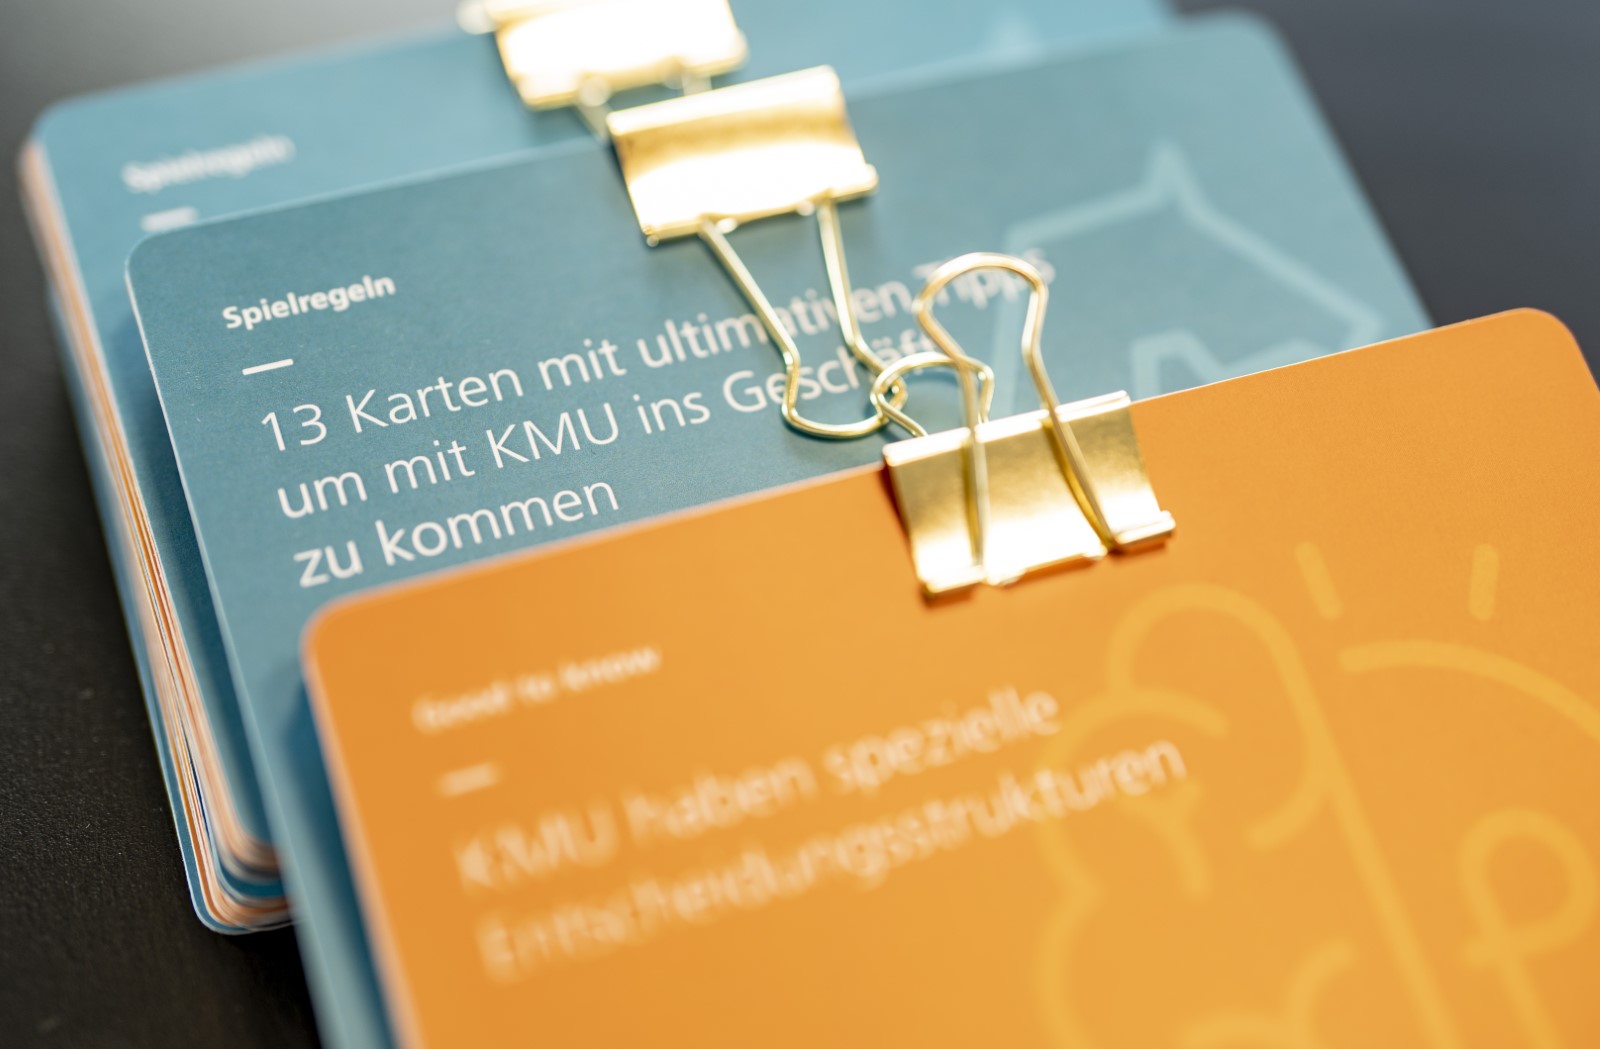 Fraunhofer und KMU – ein Kartenset für die Projektanbahnung